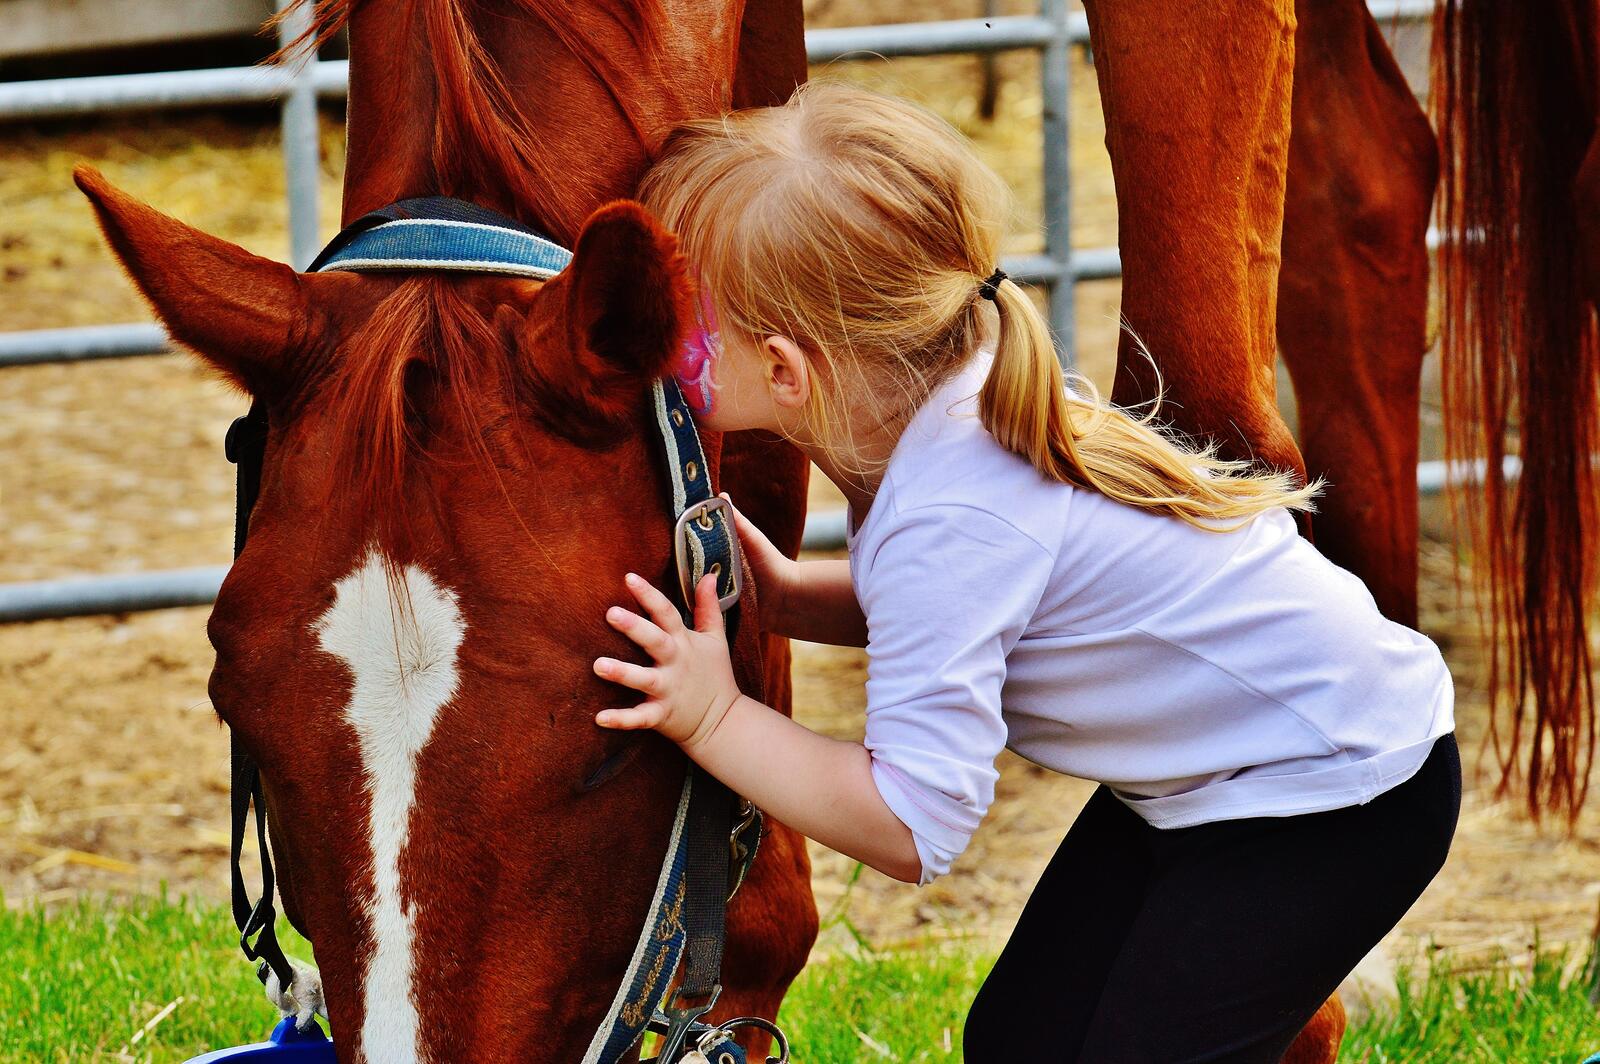 Бесплатное фото Девочка играет с лошадью